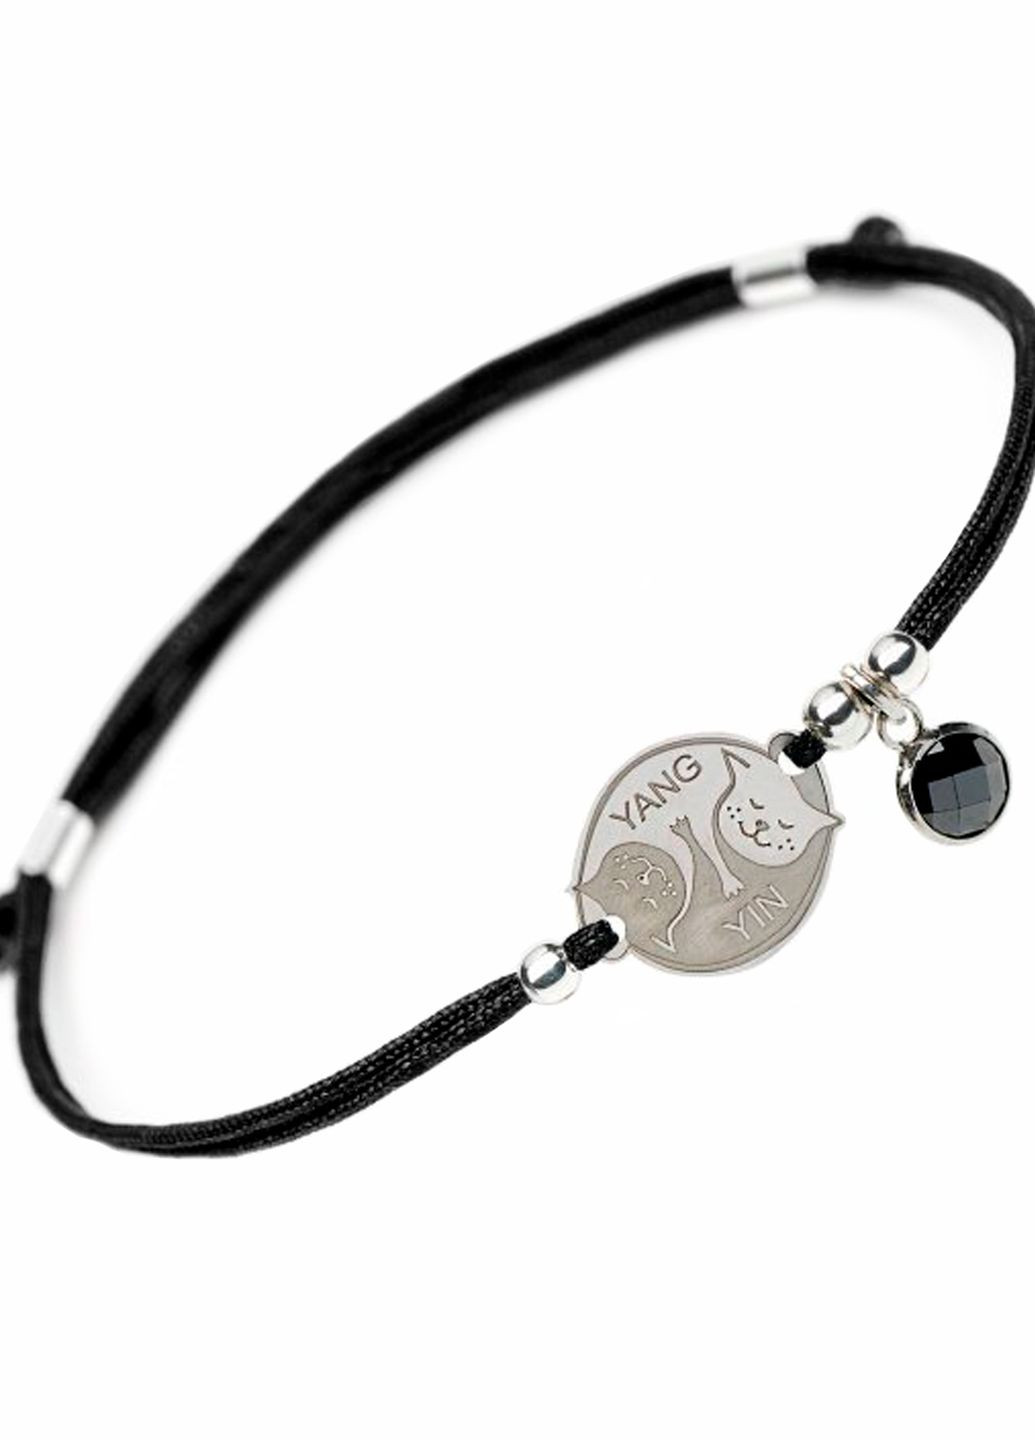 Серебряный браслет на черной шелковой нити Инь и Ян в виде кошек Yin Yang Family Tree Jewelry Line (266038550)